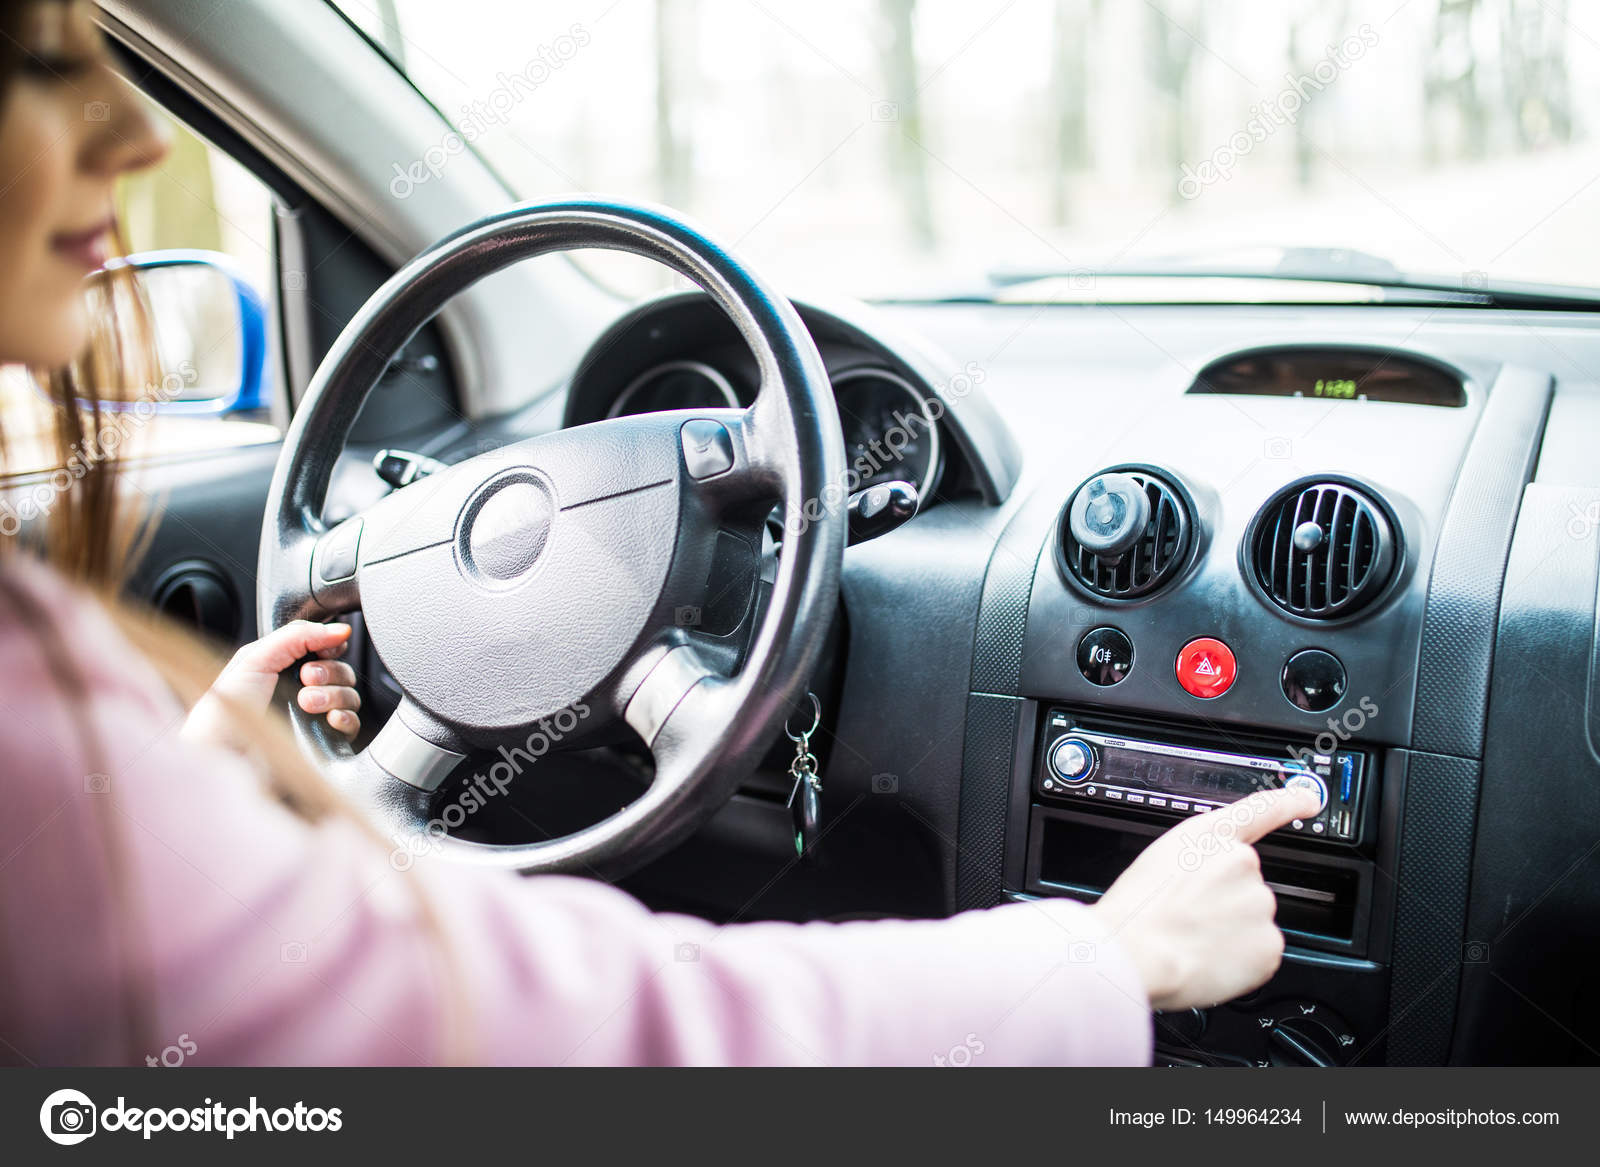 Плохо работает радио в машине: Как улучшить прием радио в автомобиле